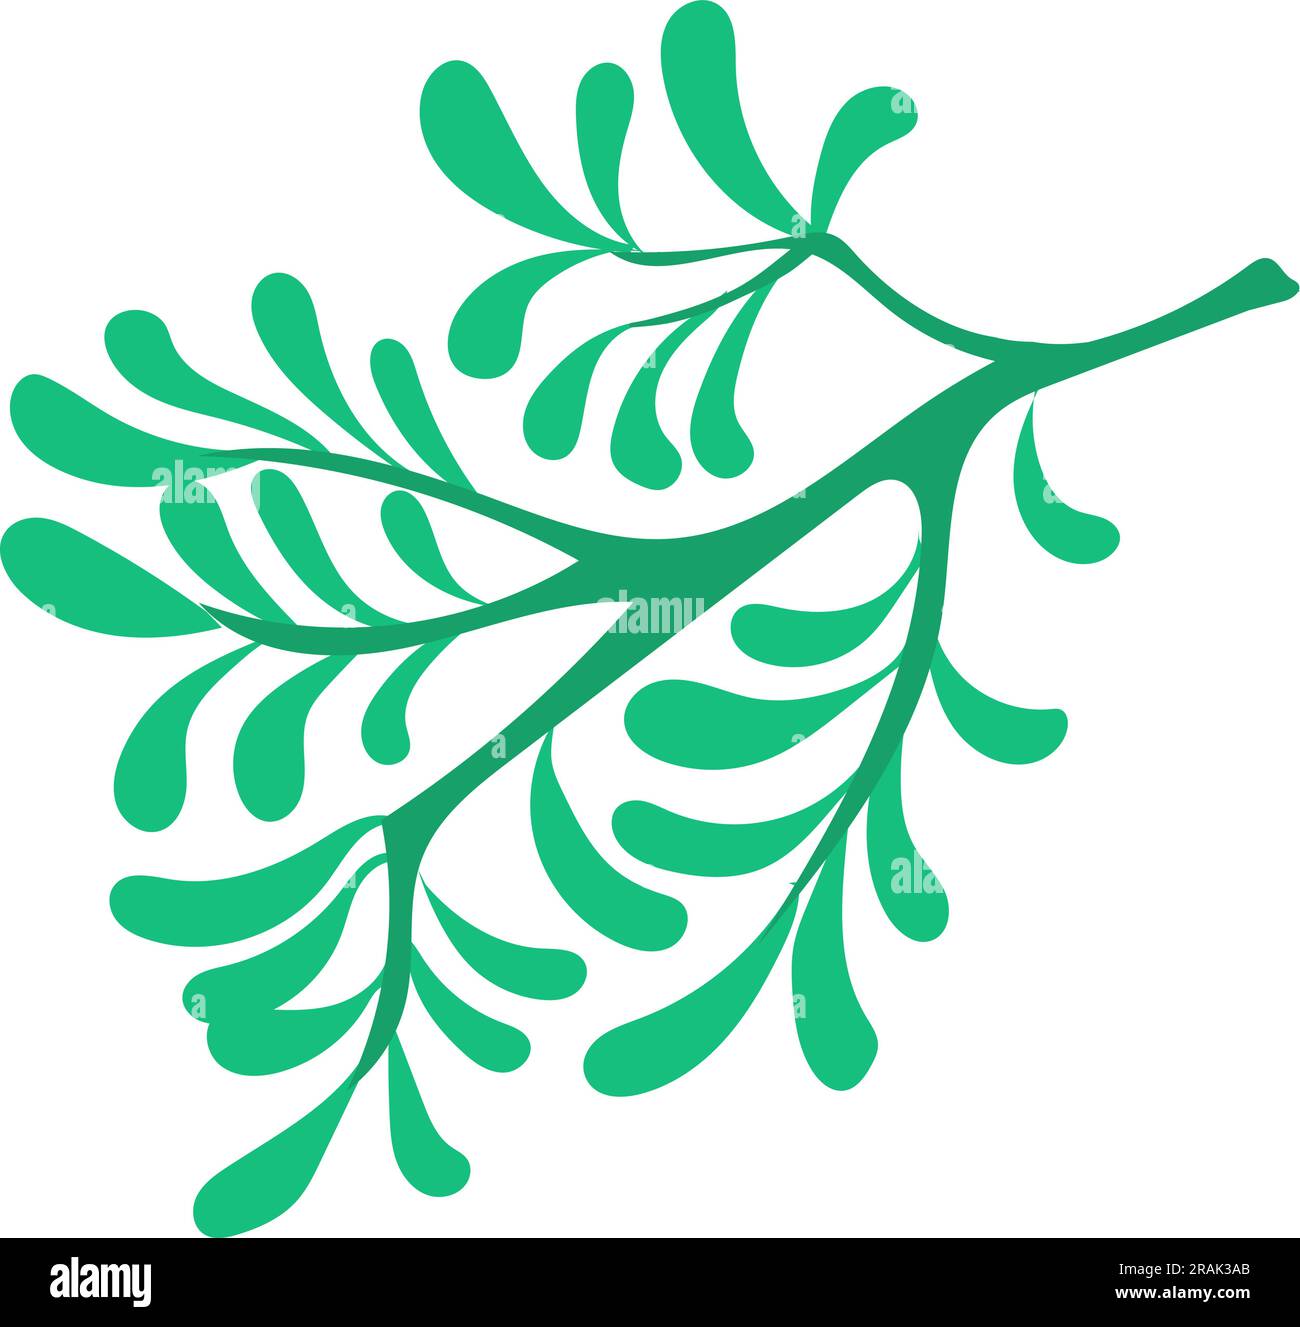 Icône de branche verte. Pousse d'arbre simple avec des feuilles Illustration de Vecteur